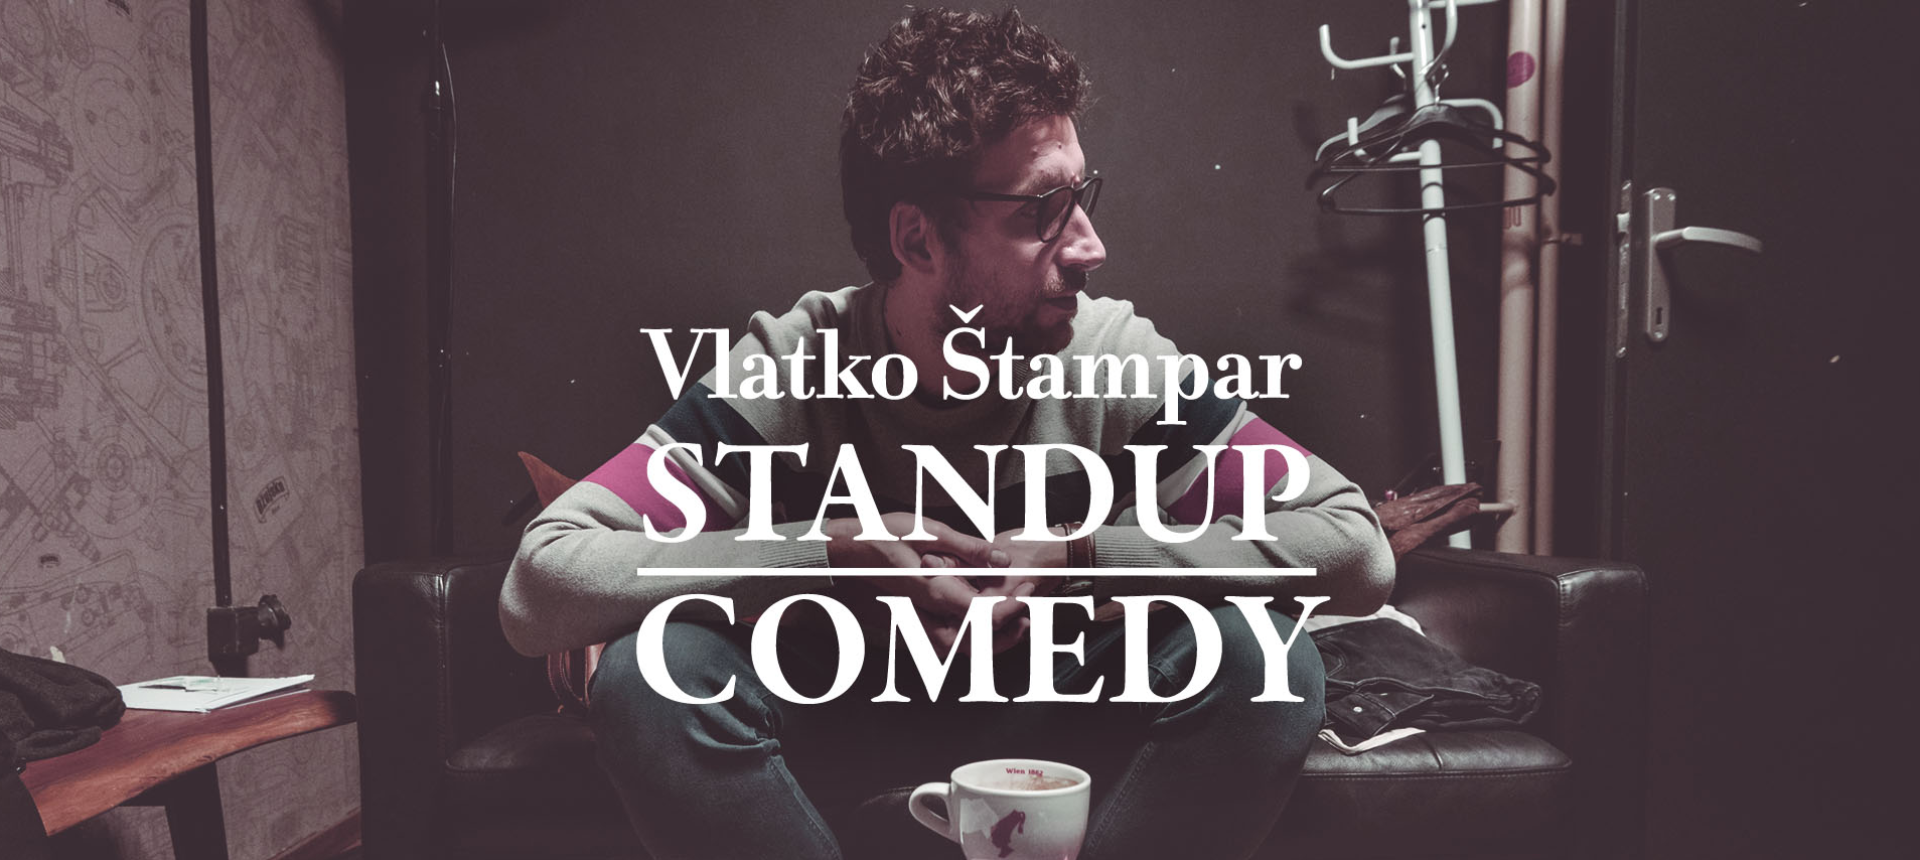  VLATKO ŠTAMPAR - STAND UP COMEDY - by Lajnap